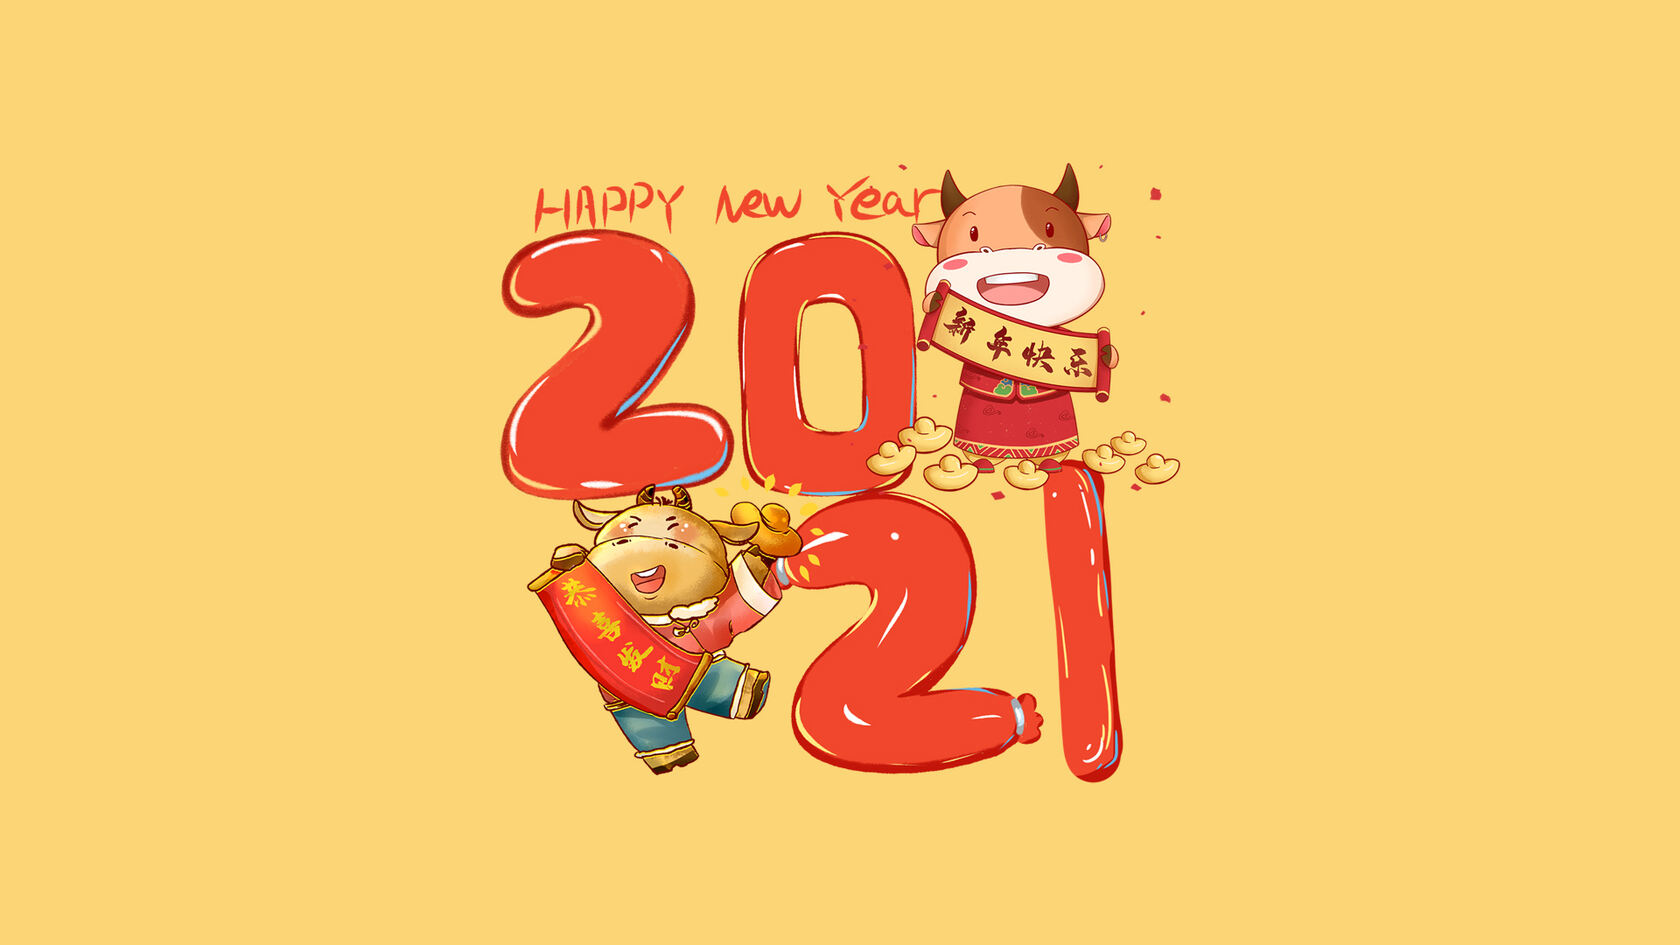 2021文字 手拿新年快乐和恭喜发财对联的 可爱卡通牛壁纸图片